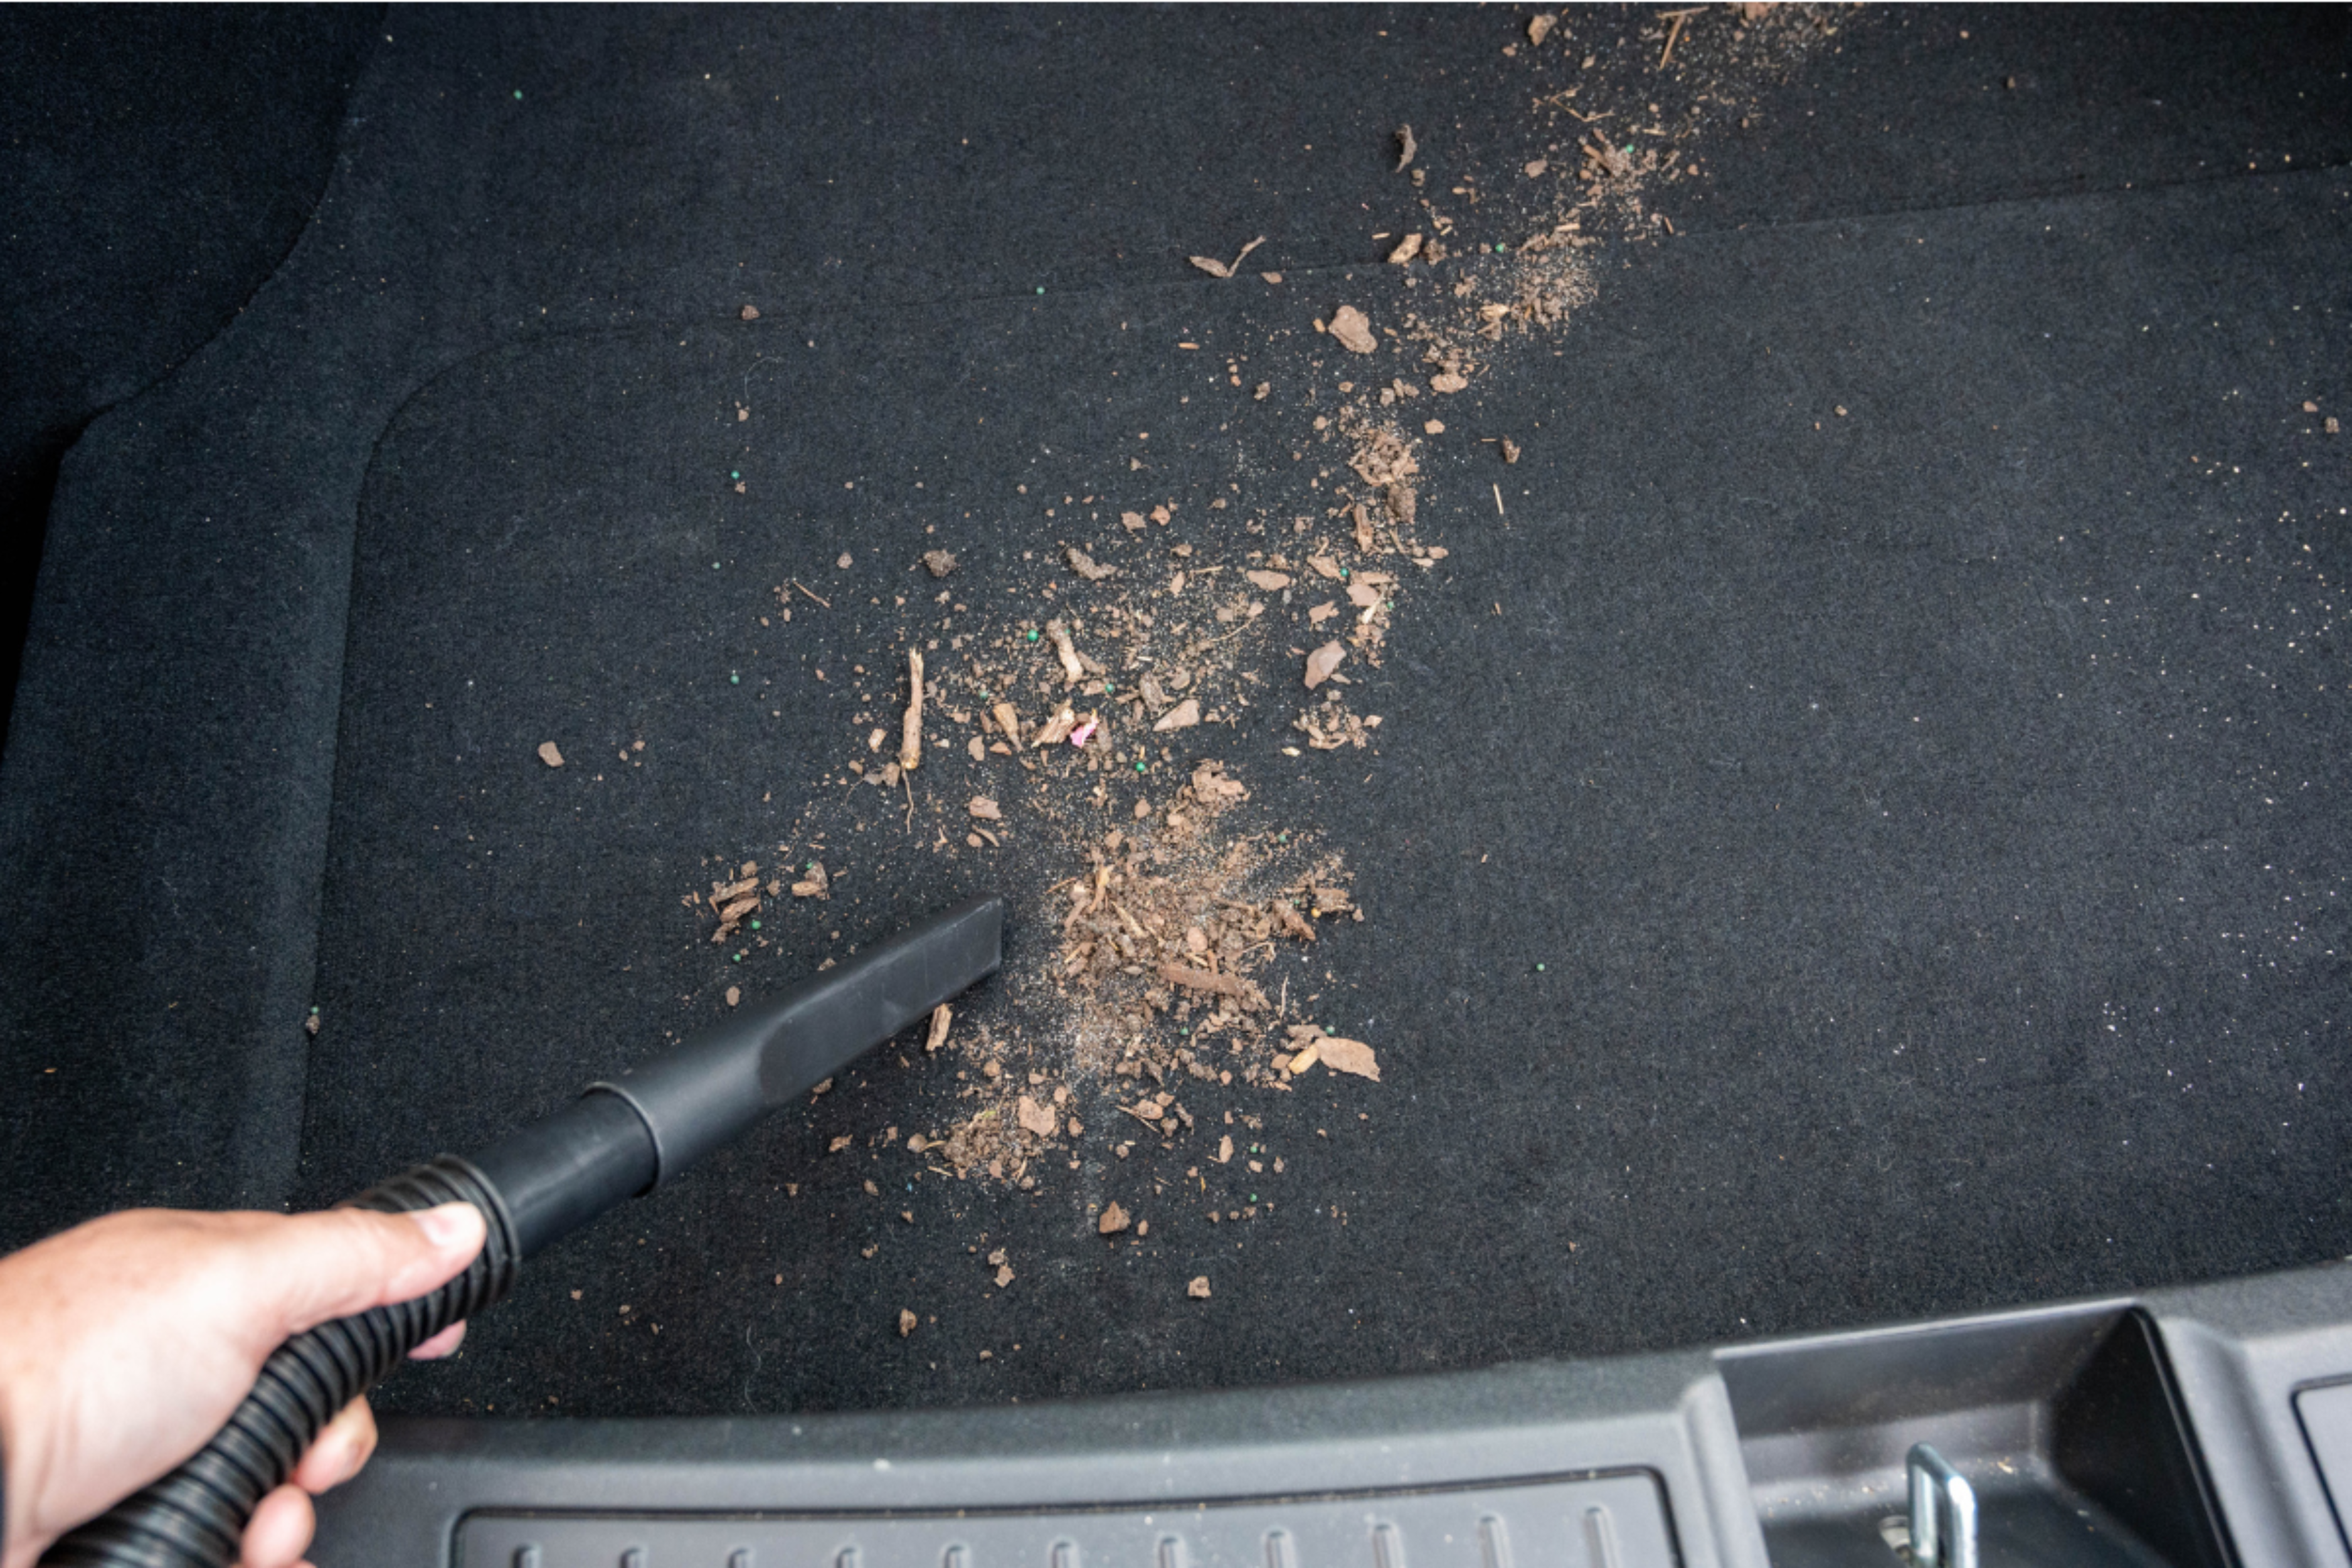 Limpieza profunda de la parte trasera del coche con una aspiradora, utilizando productos Sanytol para combatir los malos olores